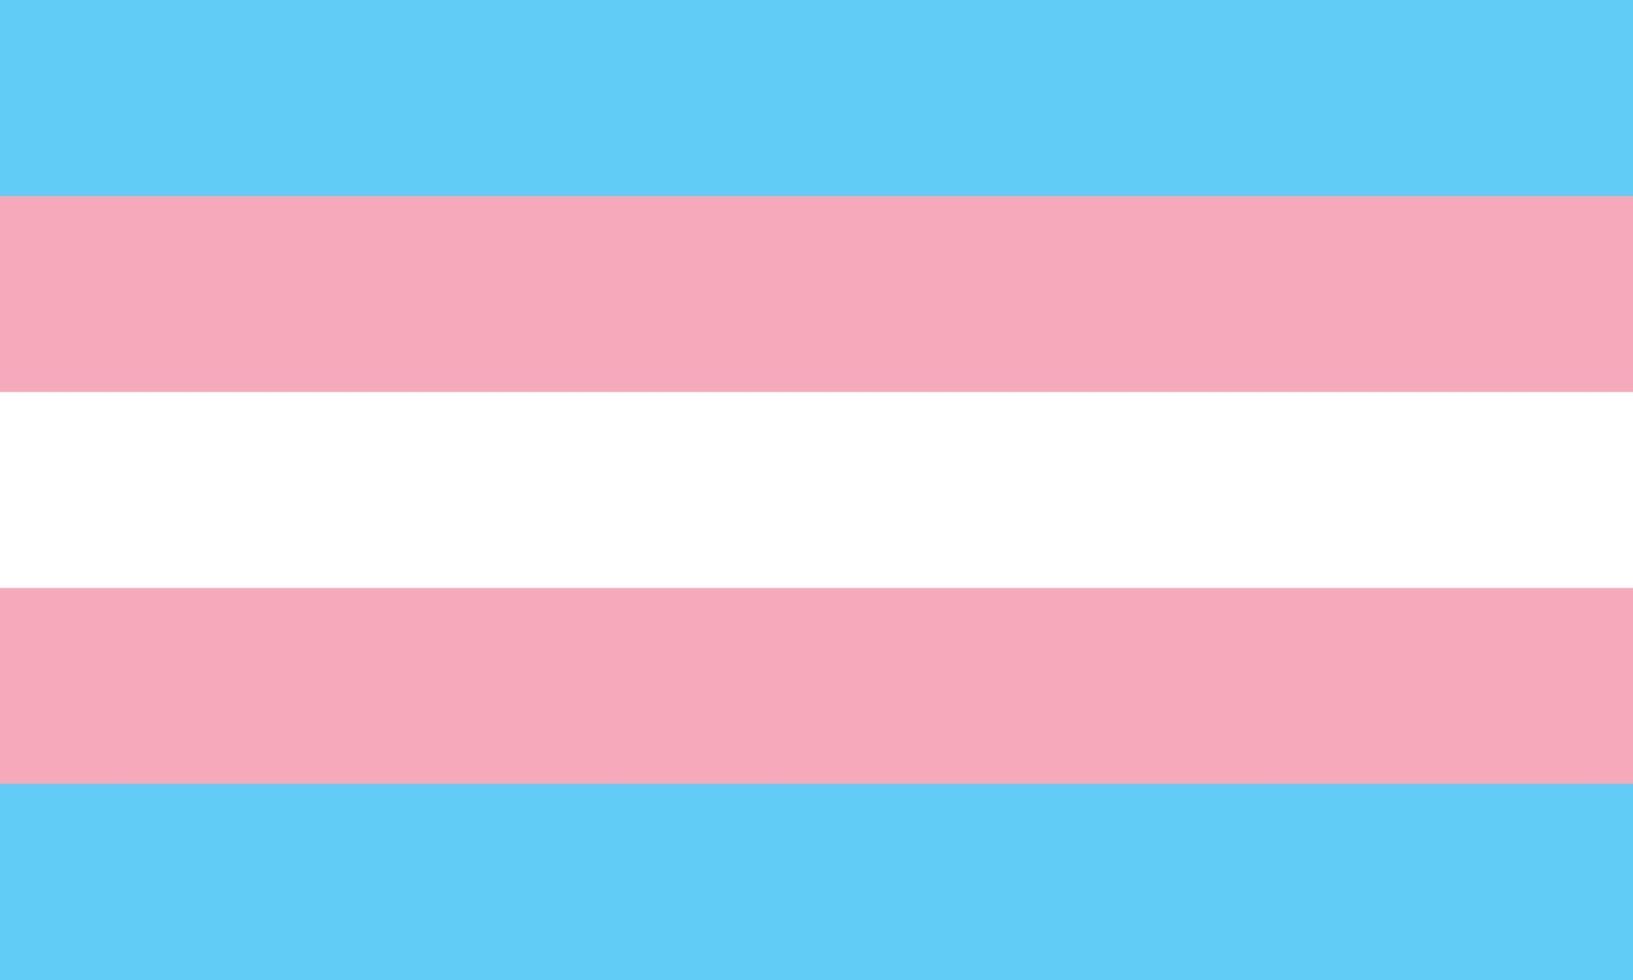 la bandera del orgullo transgénero - bandera del orgullo pentacolor a rayas azul claro, rosa y blanco, símbolo de la comunidad transgénero. parte de los símbolos de la serie lgbt vector